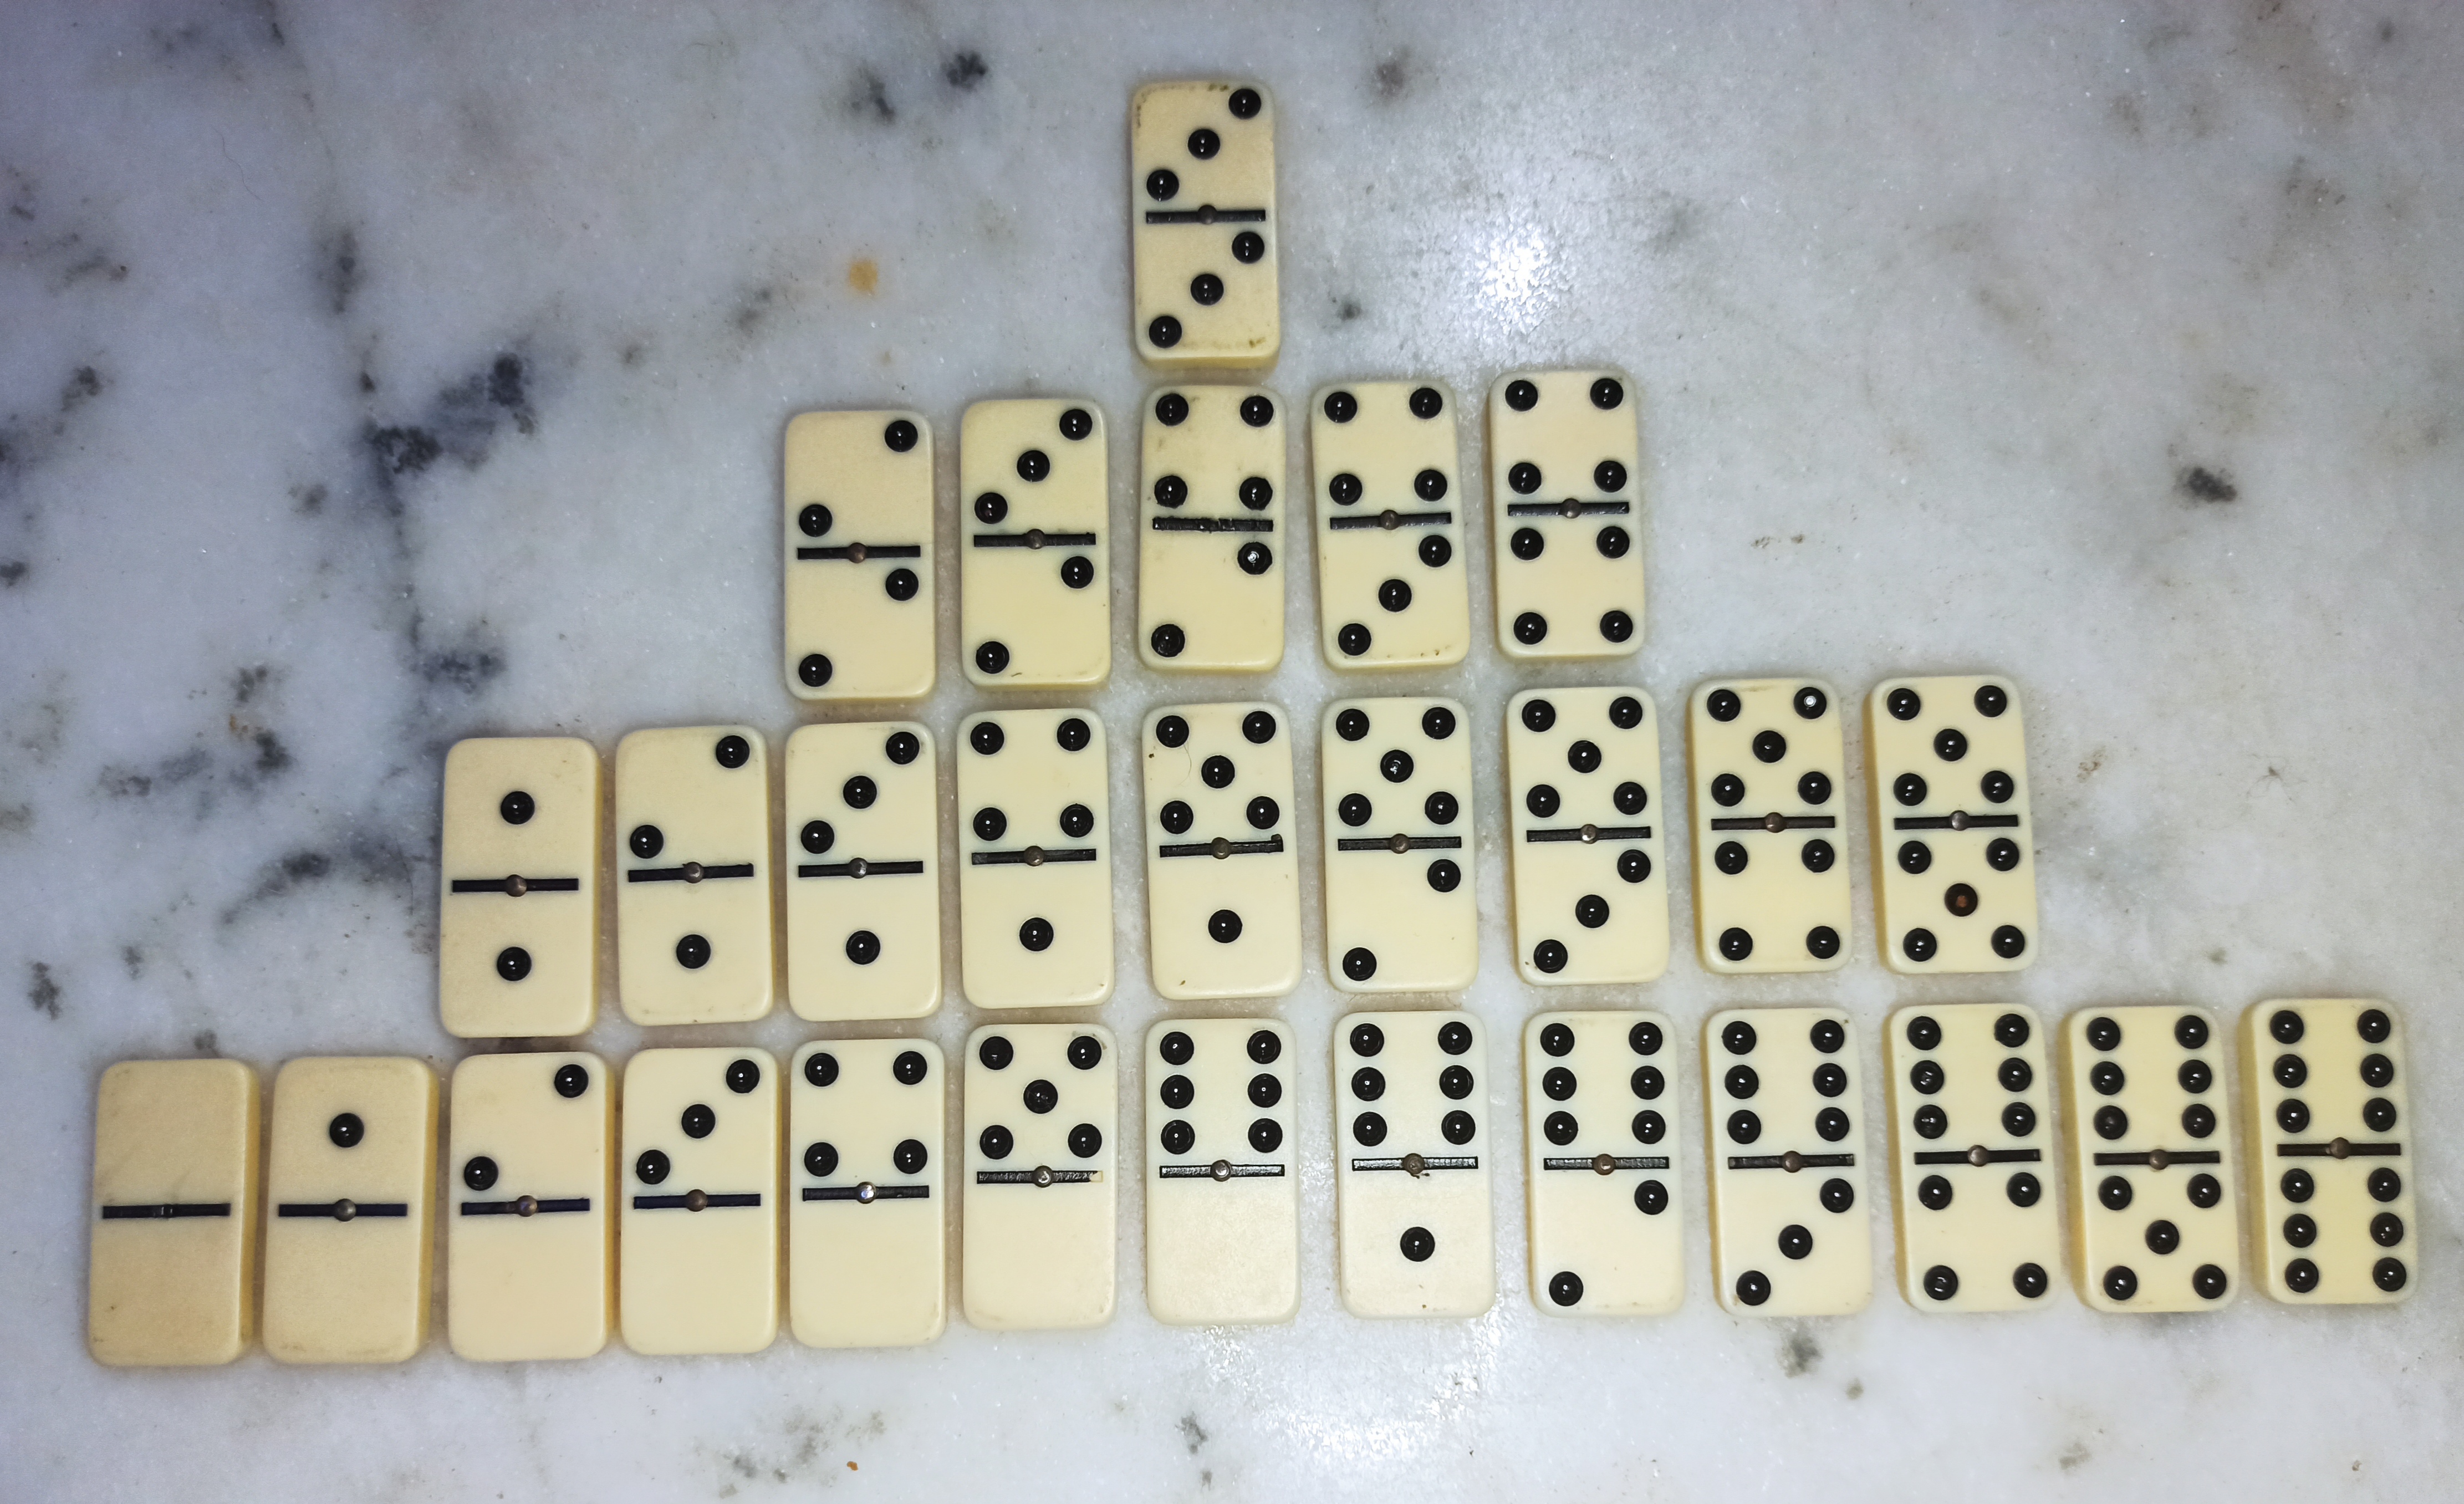 Fichas de dominó ordenadas por sus sumas